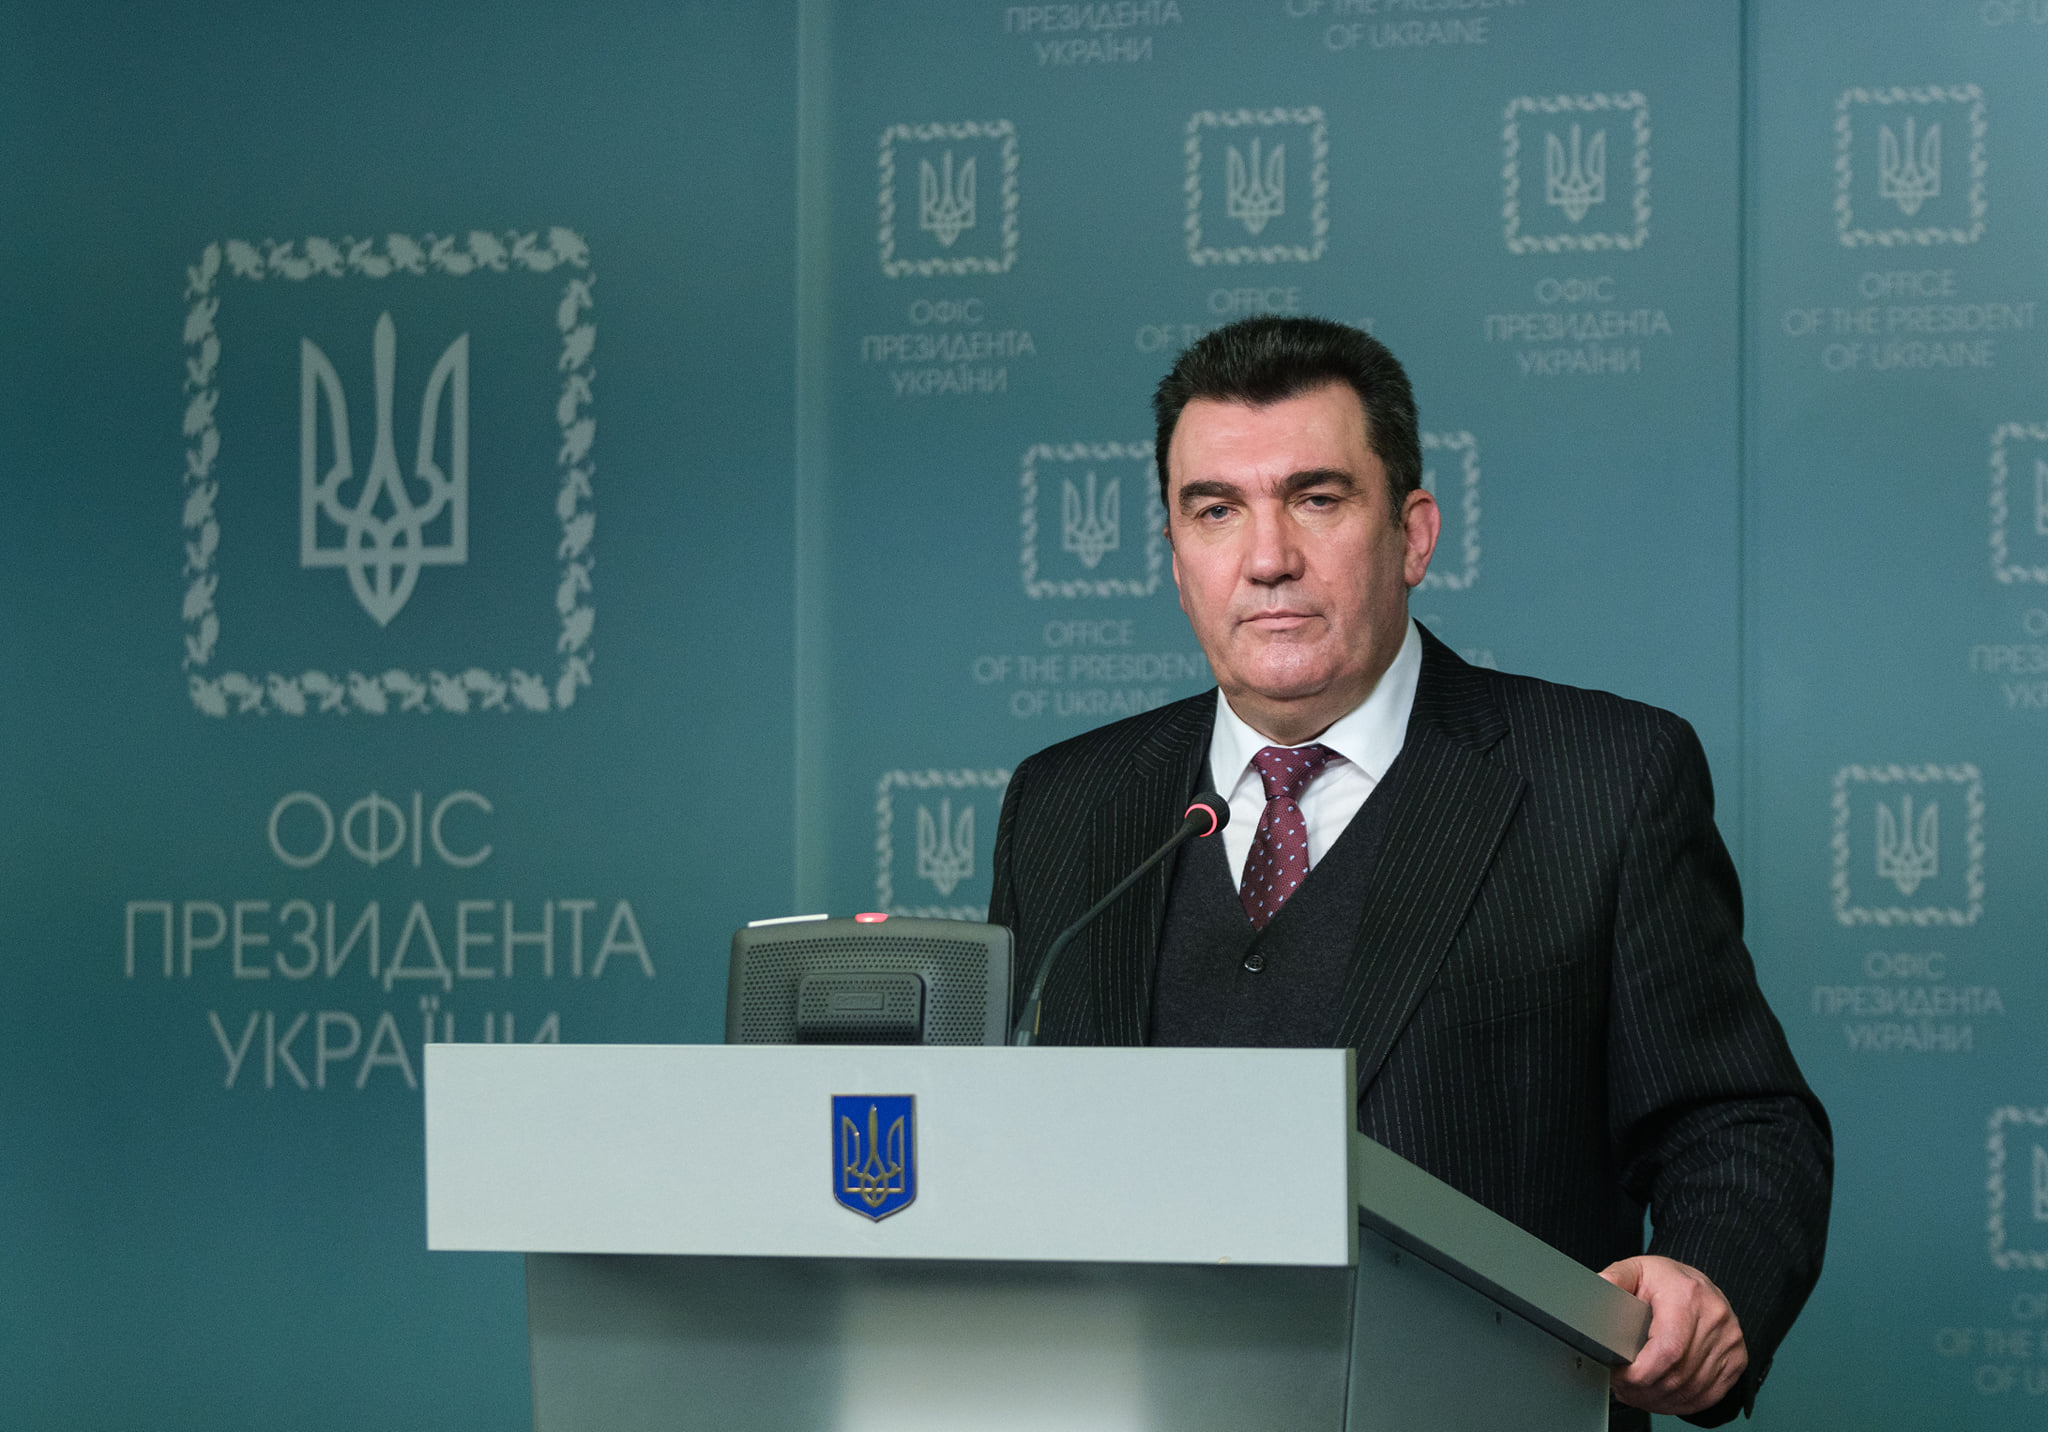 Данілов: Українських посадовців та олігархів зобов’яжуть повідомляти про подвійне громадянство